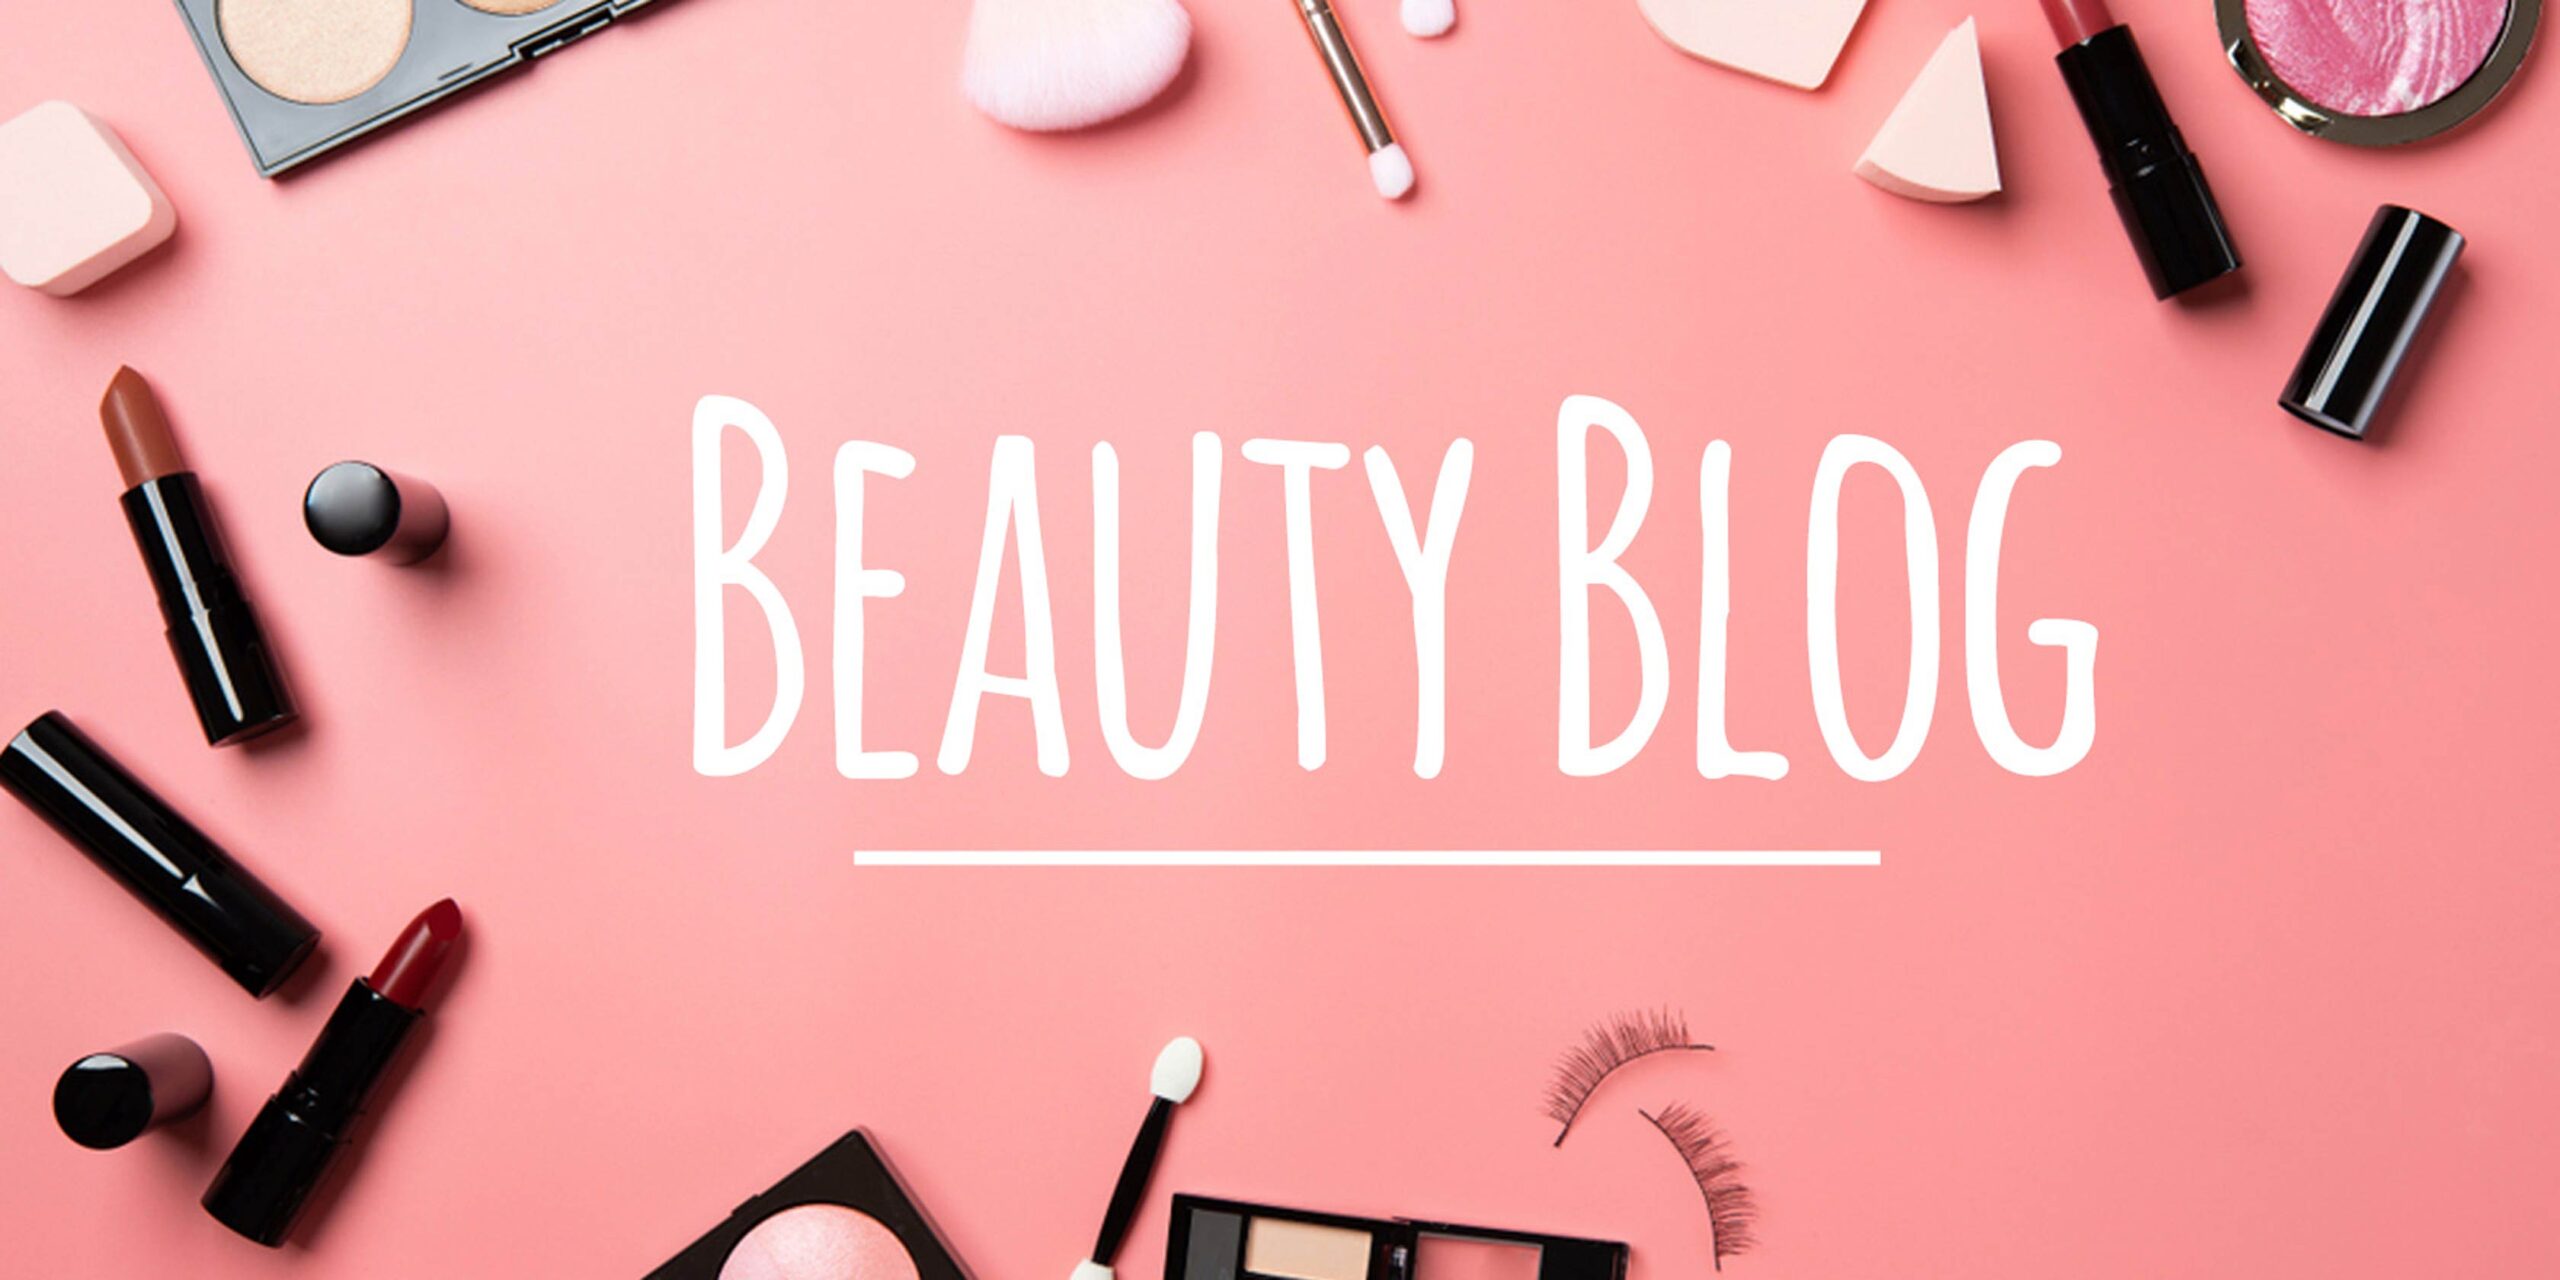 No-Nonsense Beauty Blog